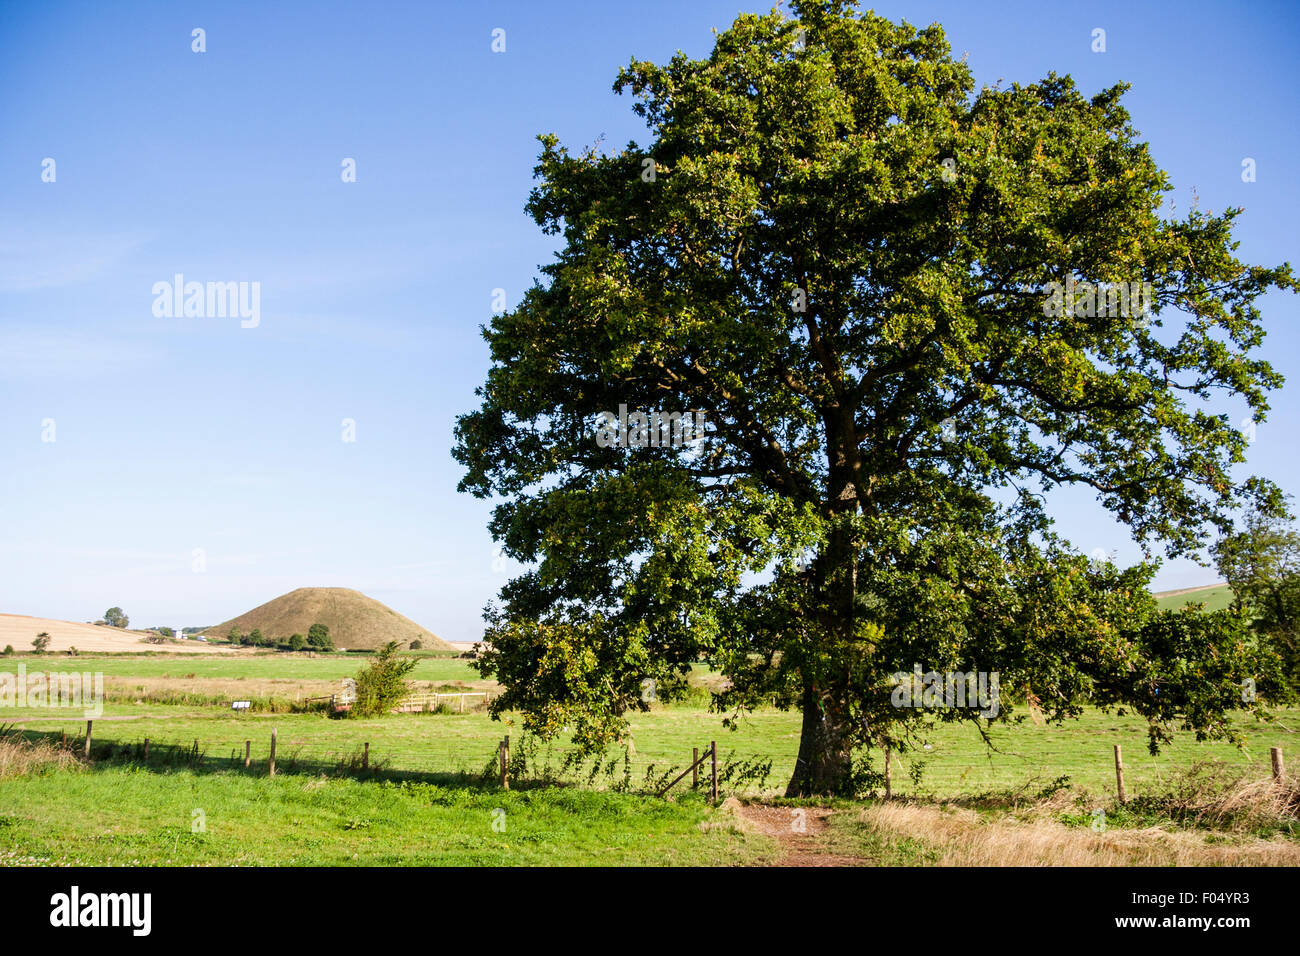 Tir lointain, Silbury Hill, les tumulus néolithique en Angleterre. 40 mètres de haut standing tall monticule dans paysage relativement plat, arbre en premier plan. Banque D'Images